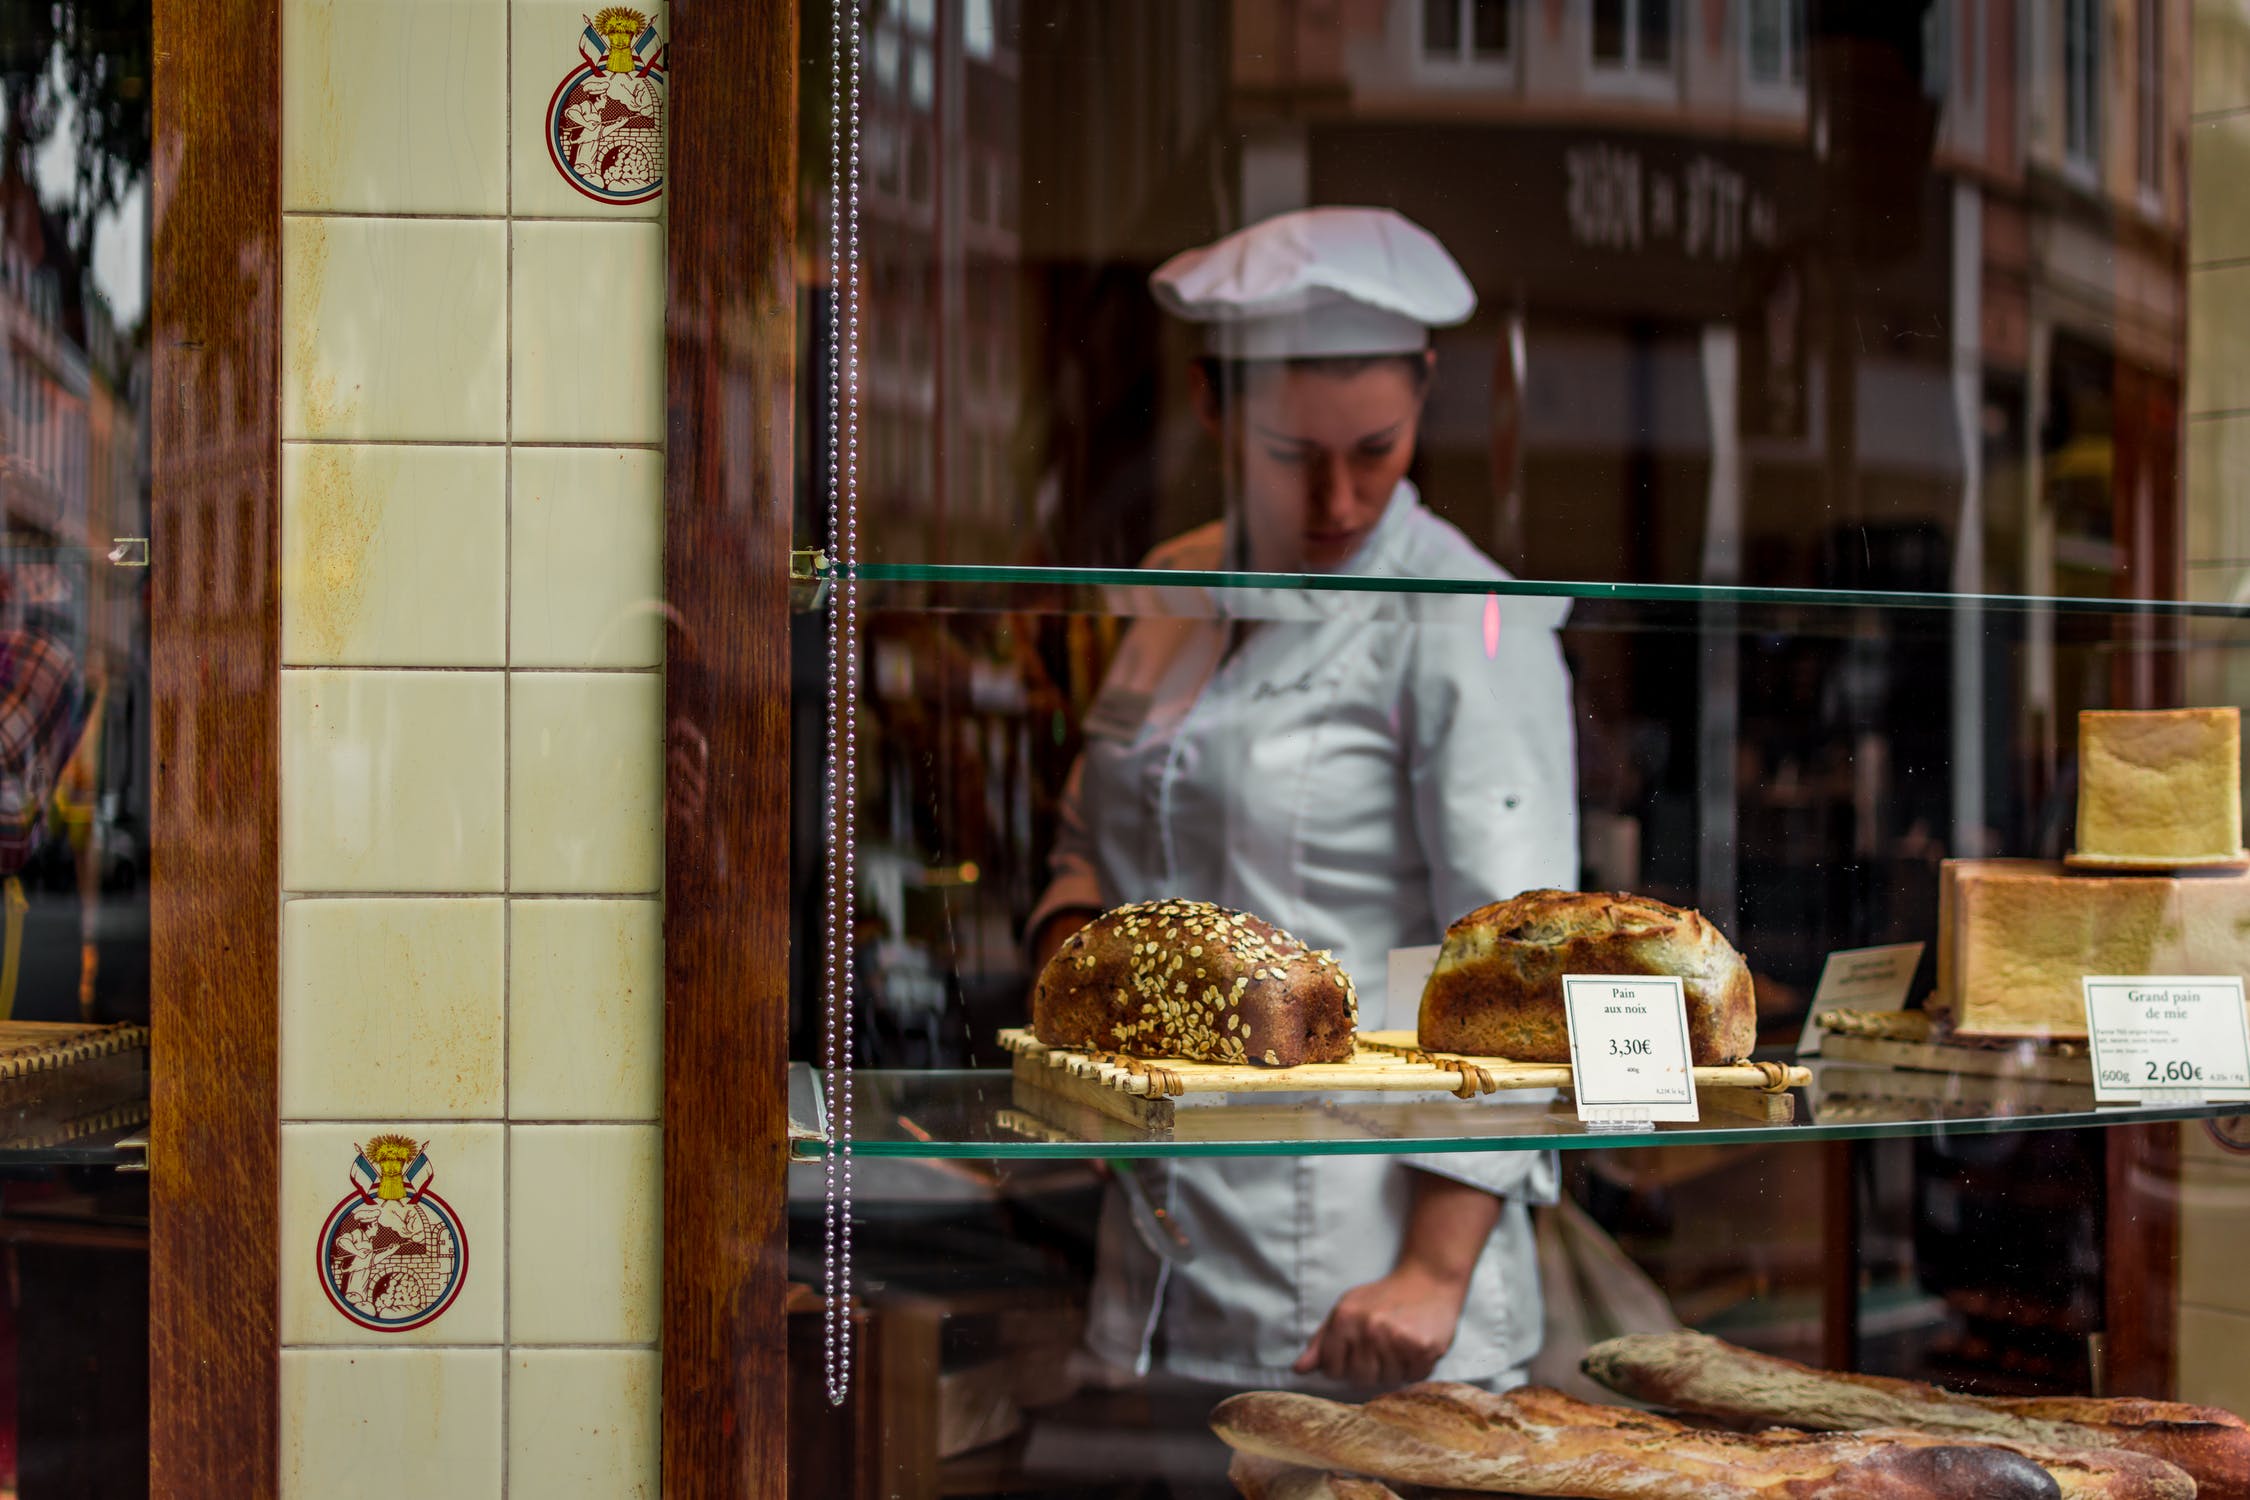 Rund um die Uhr erreichbar für 1.300 Euro – ein Bäckerei-Verkäufer erzählt